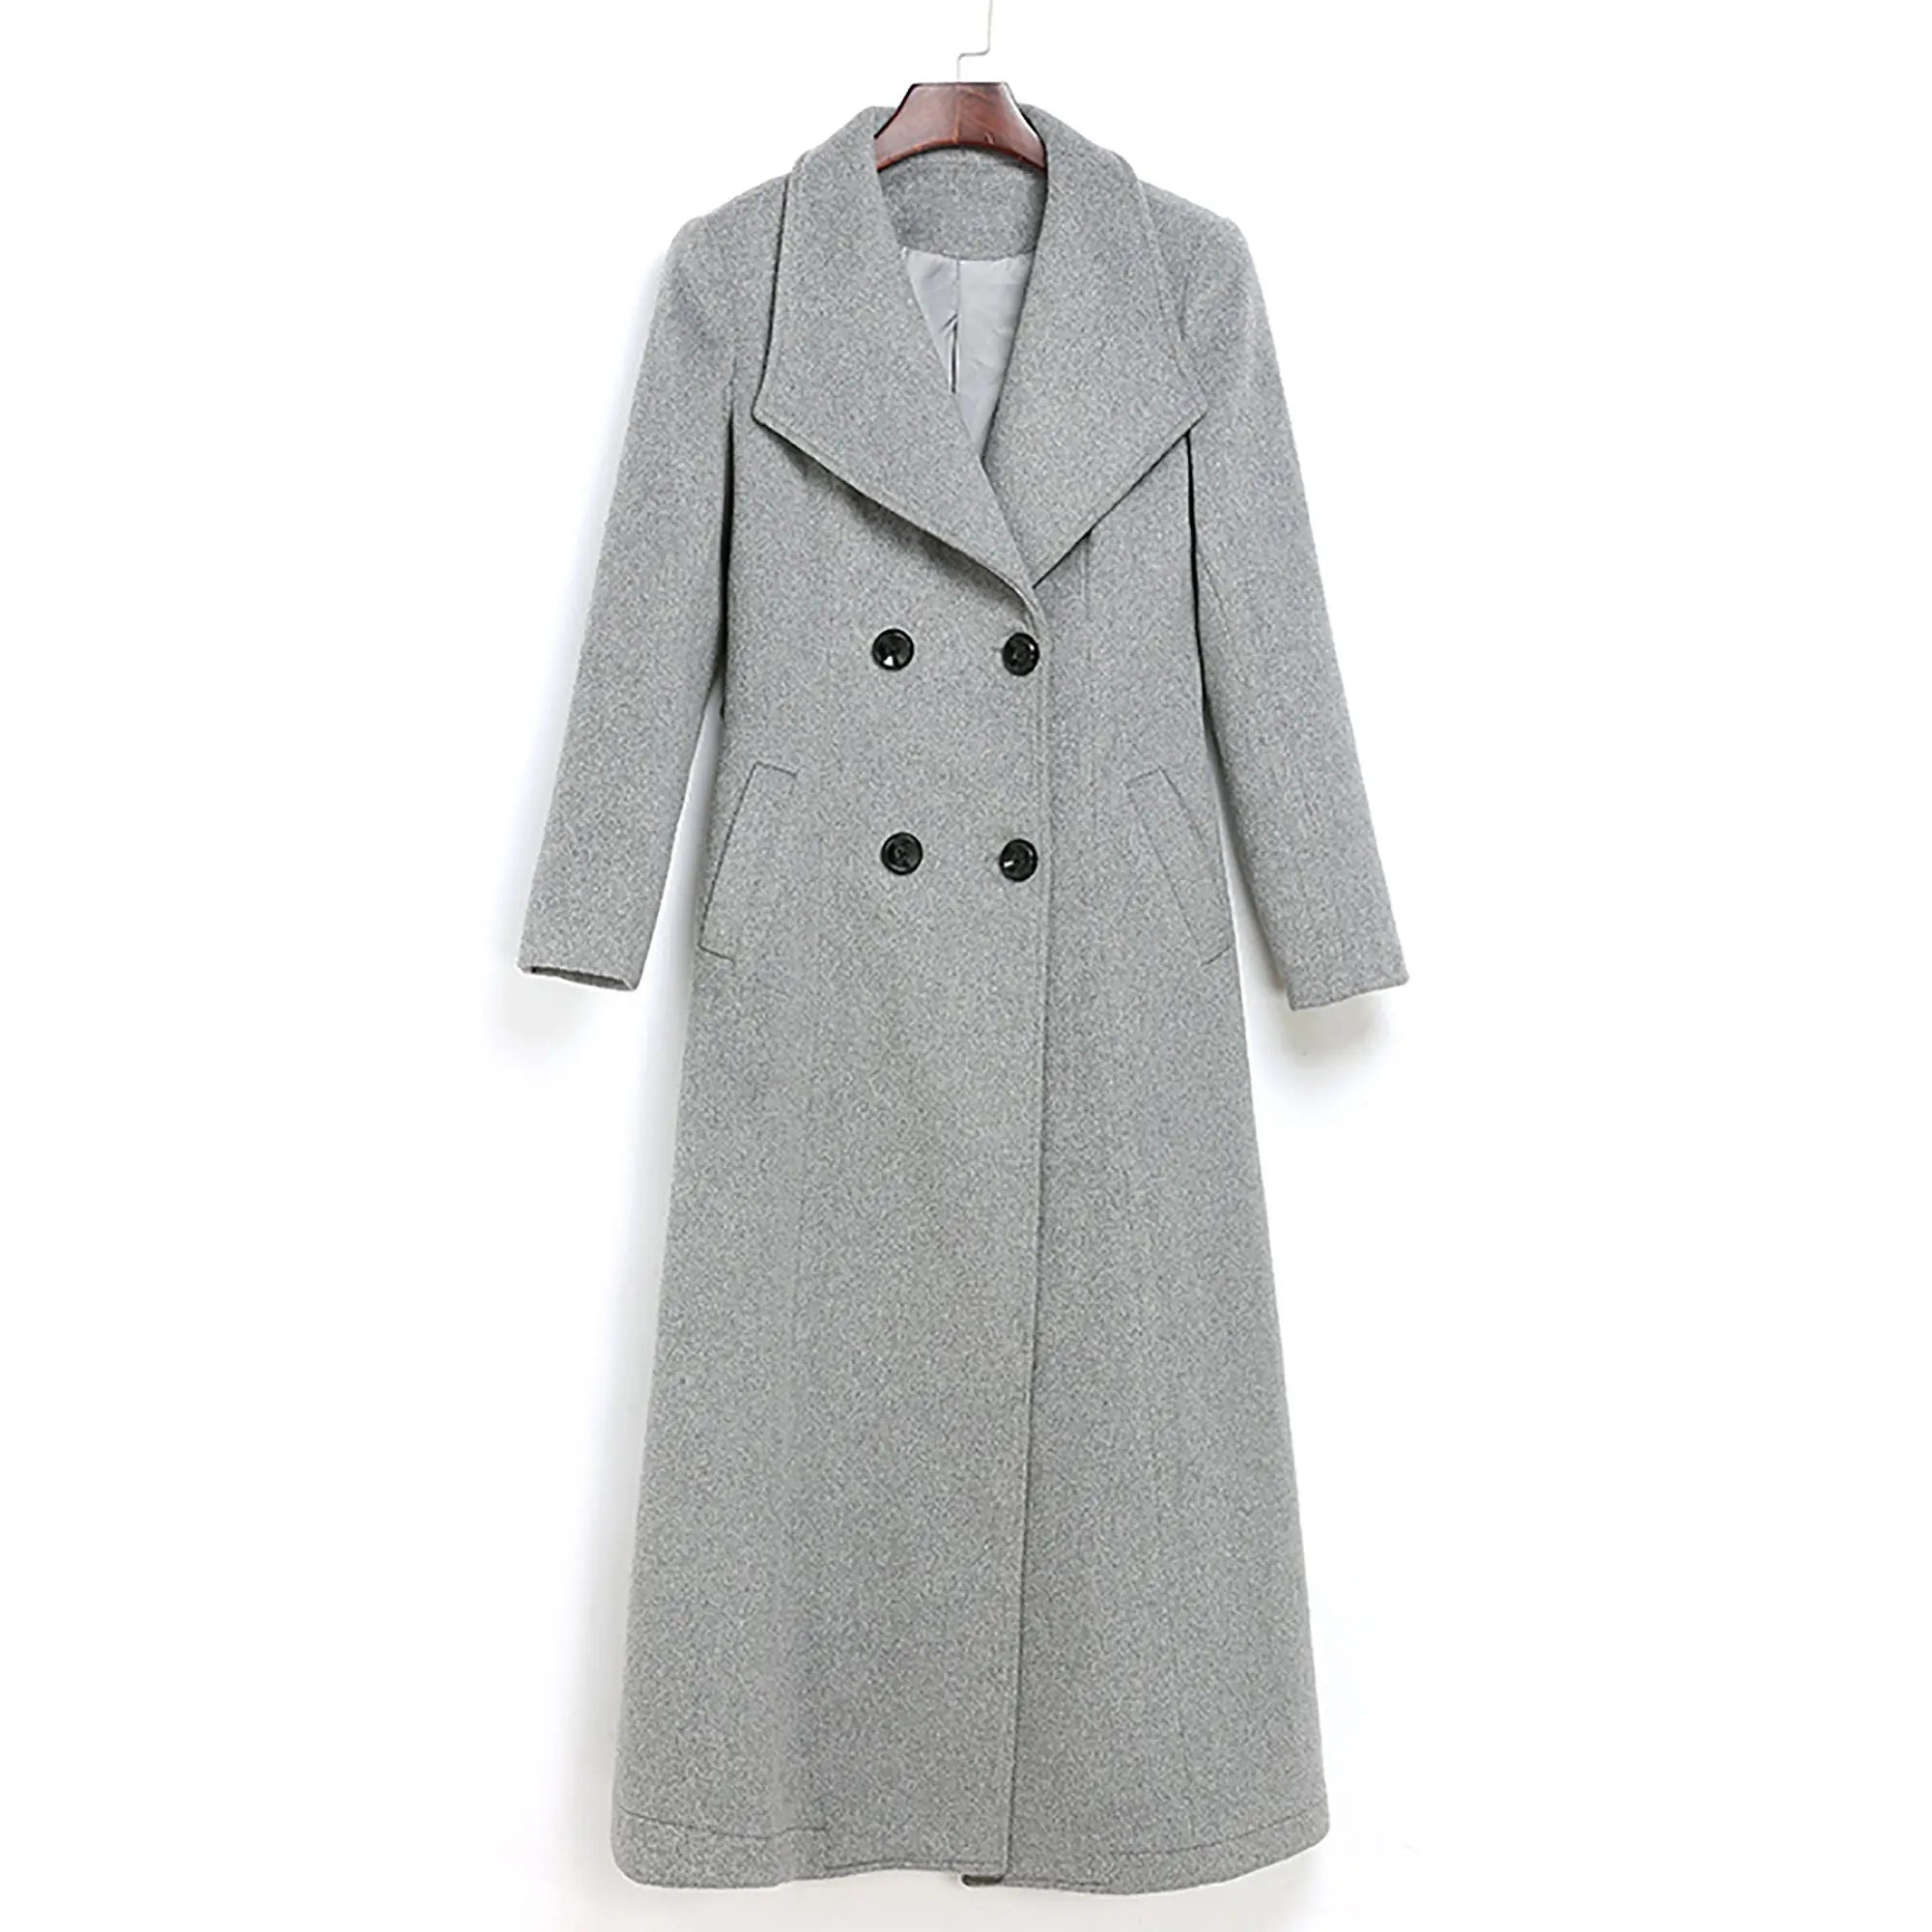 Custom Wool Long Coat,Autumn winter over-the-knee woolen coat,Women cashmere coat,Double Breasted Wool Blend Coat,Winter Outerwear Overcoat Vivian Seven